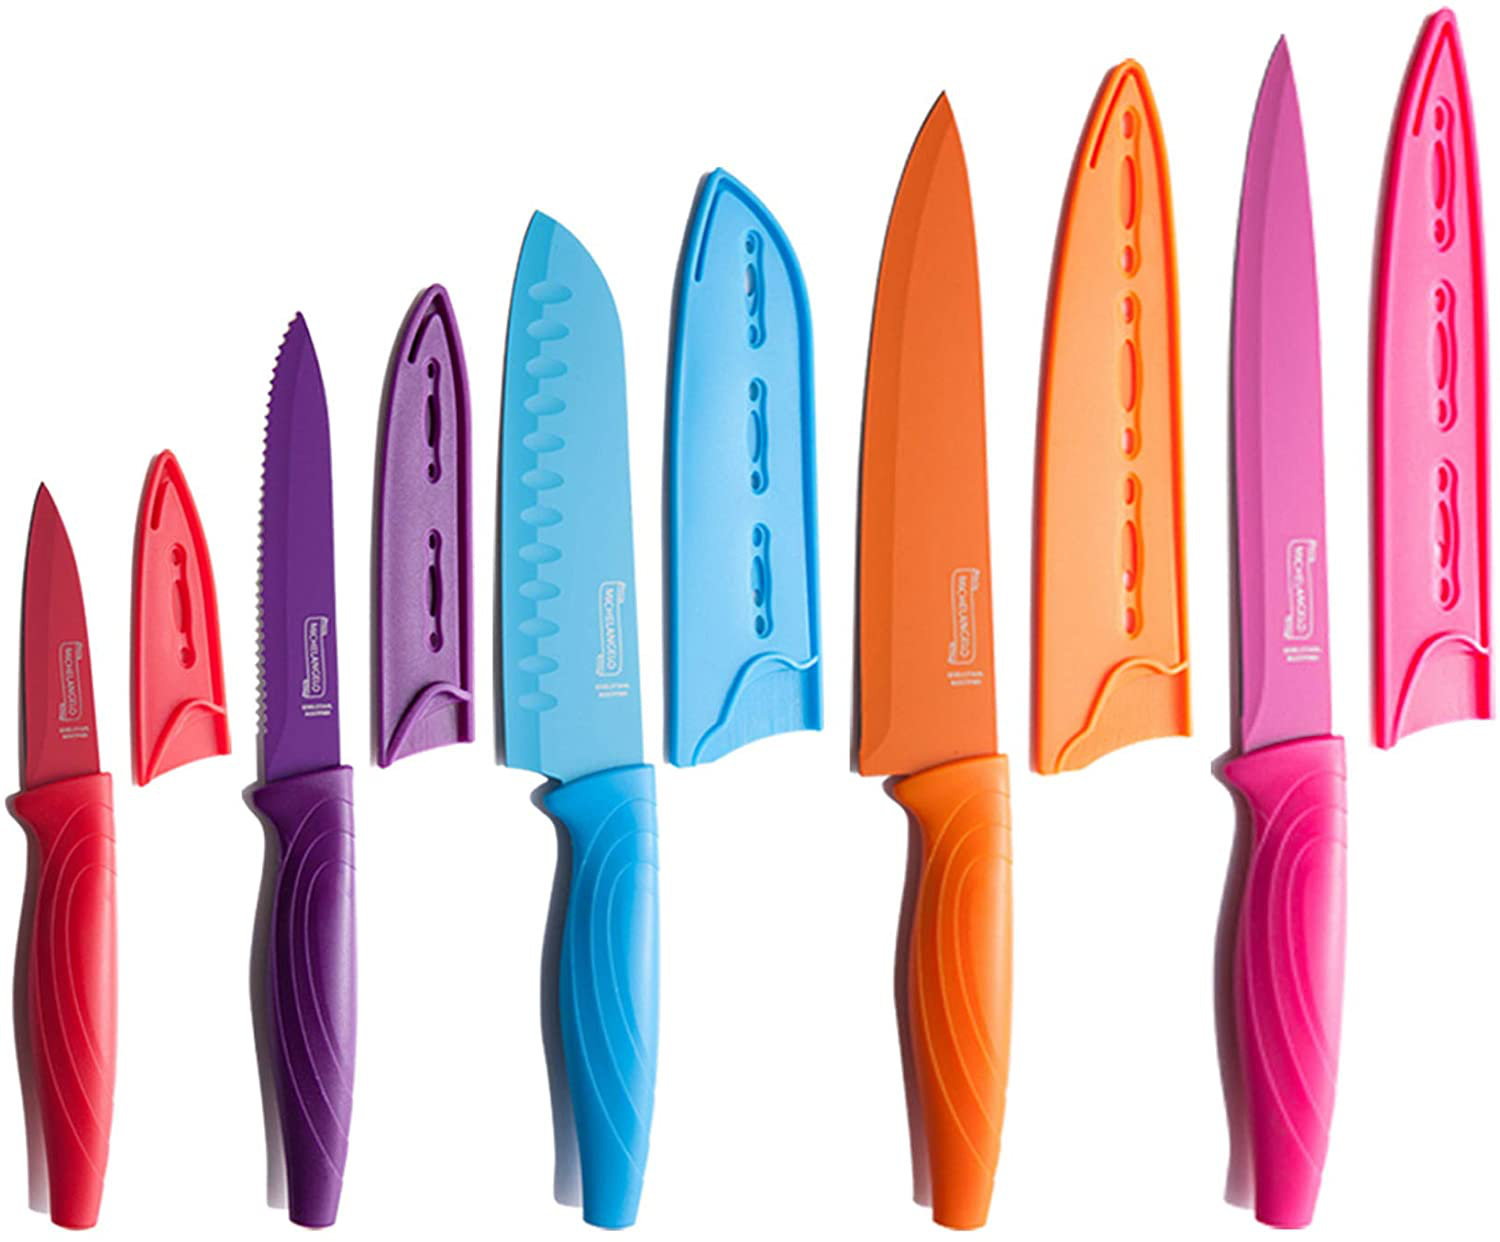 Knife Blade Guards, 10 Piece Knife Sheath Set